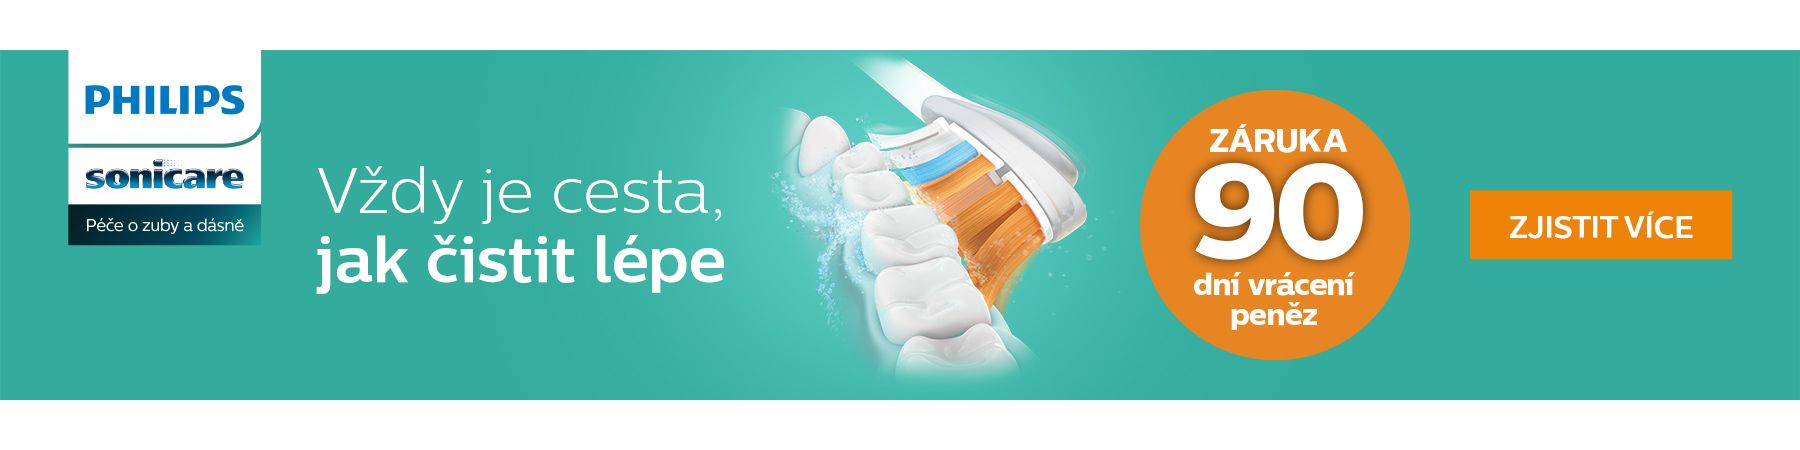 Philips Sonicare, elektrický zubní kartáček, zdravé zuby, zdravé dásně